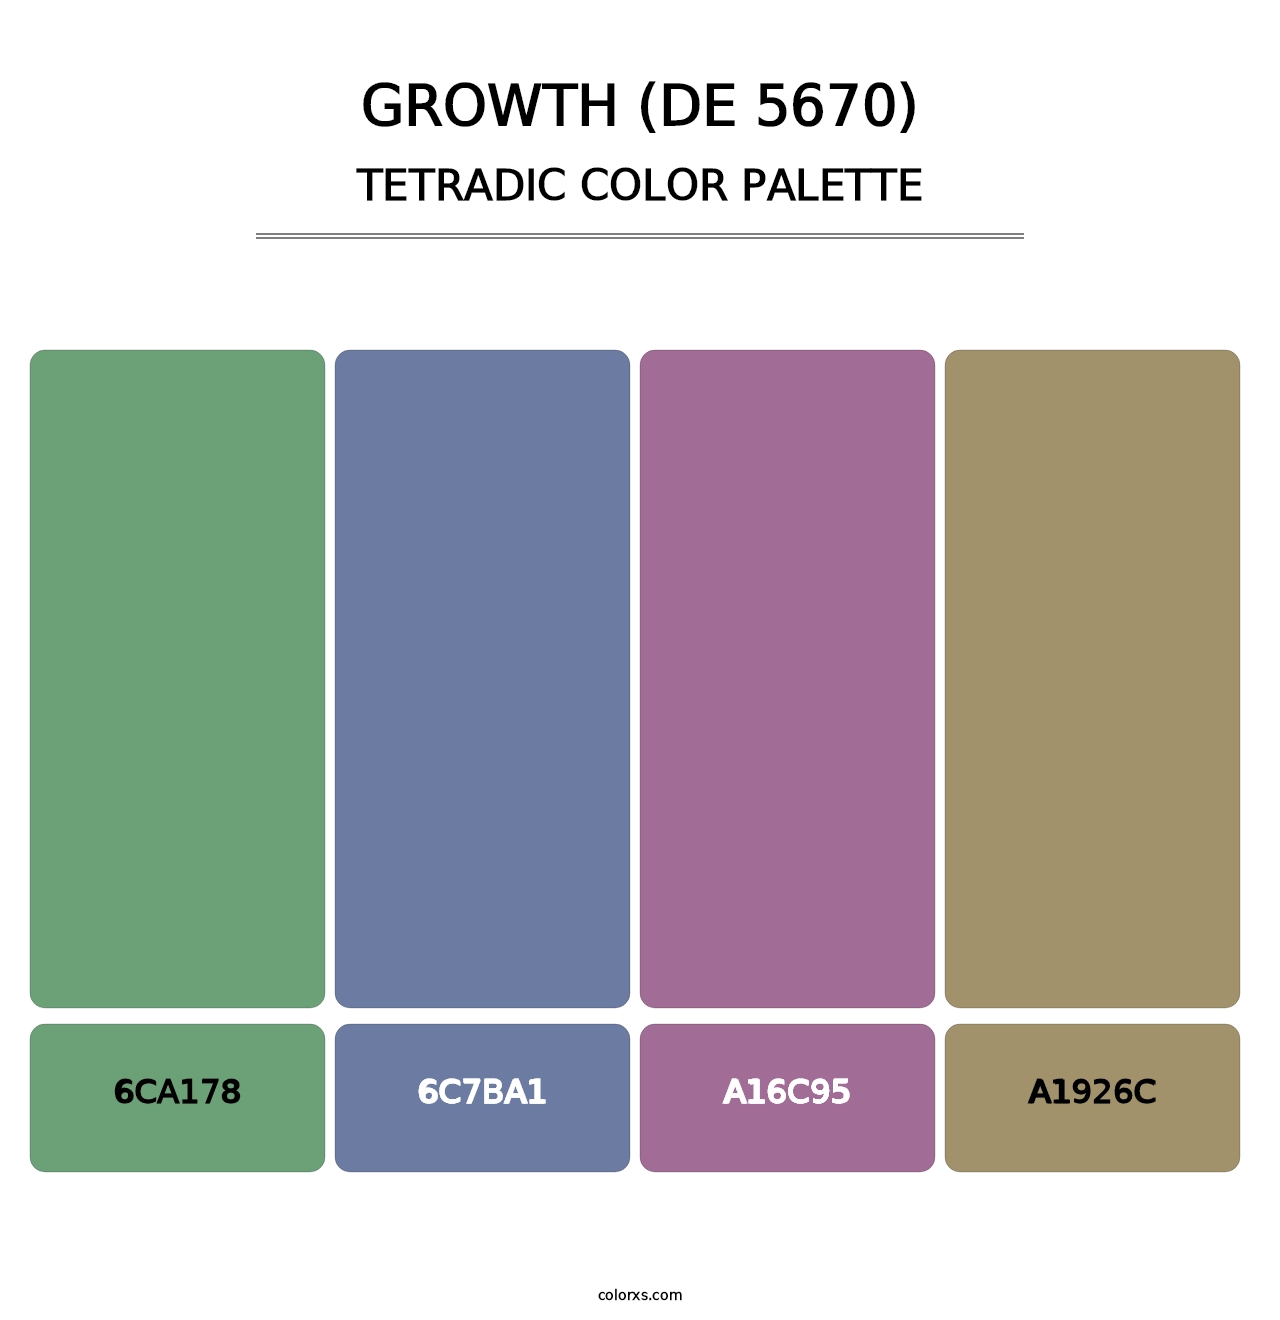 Growth (DE 5670) - Tetradic Color Palette